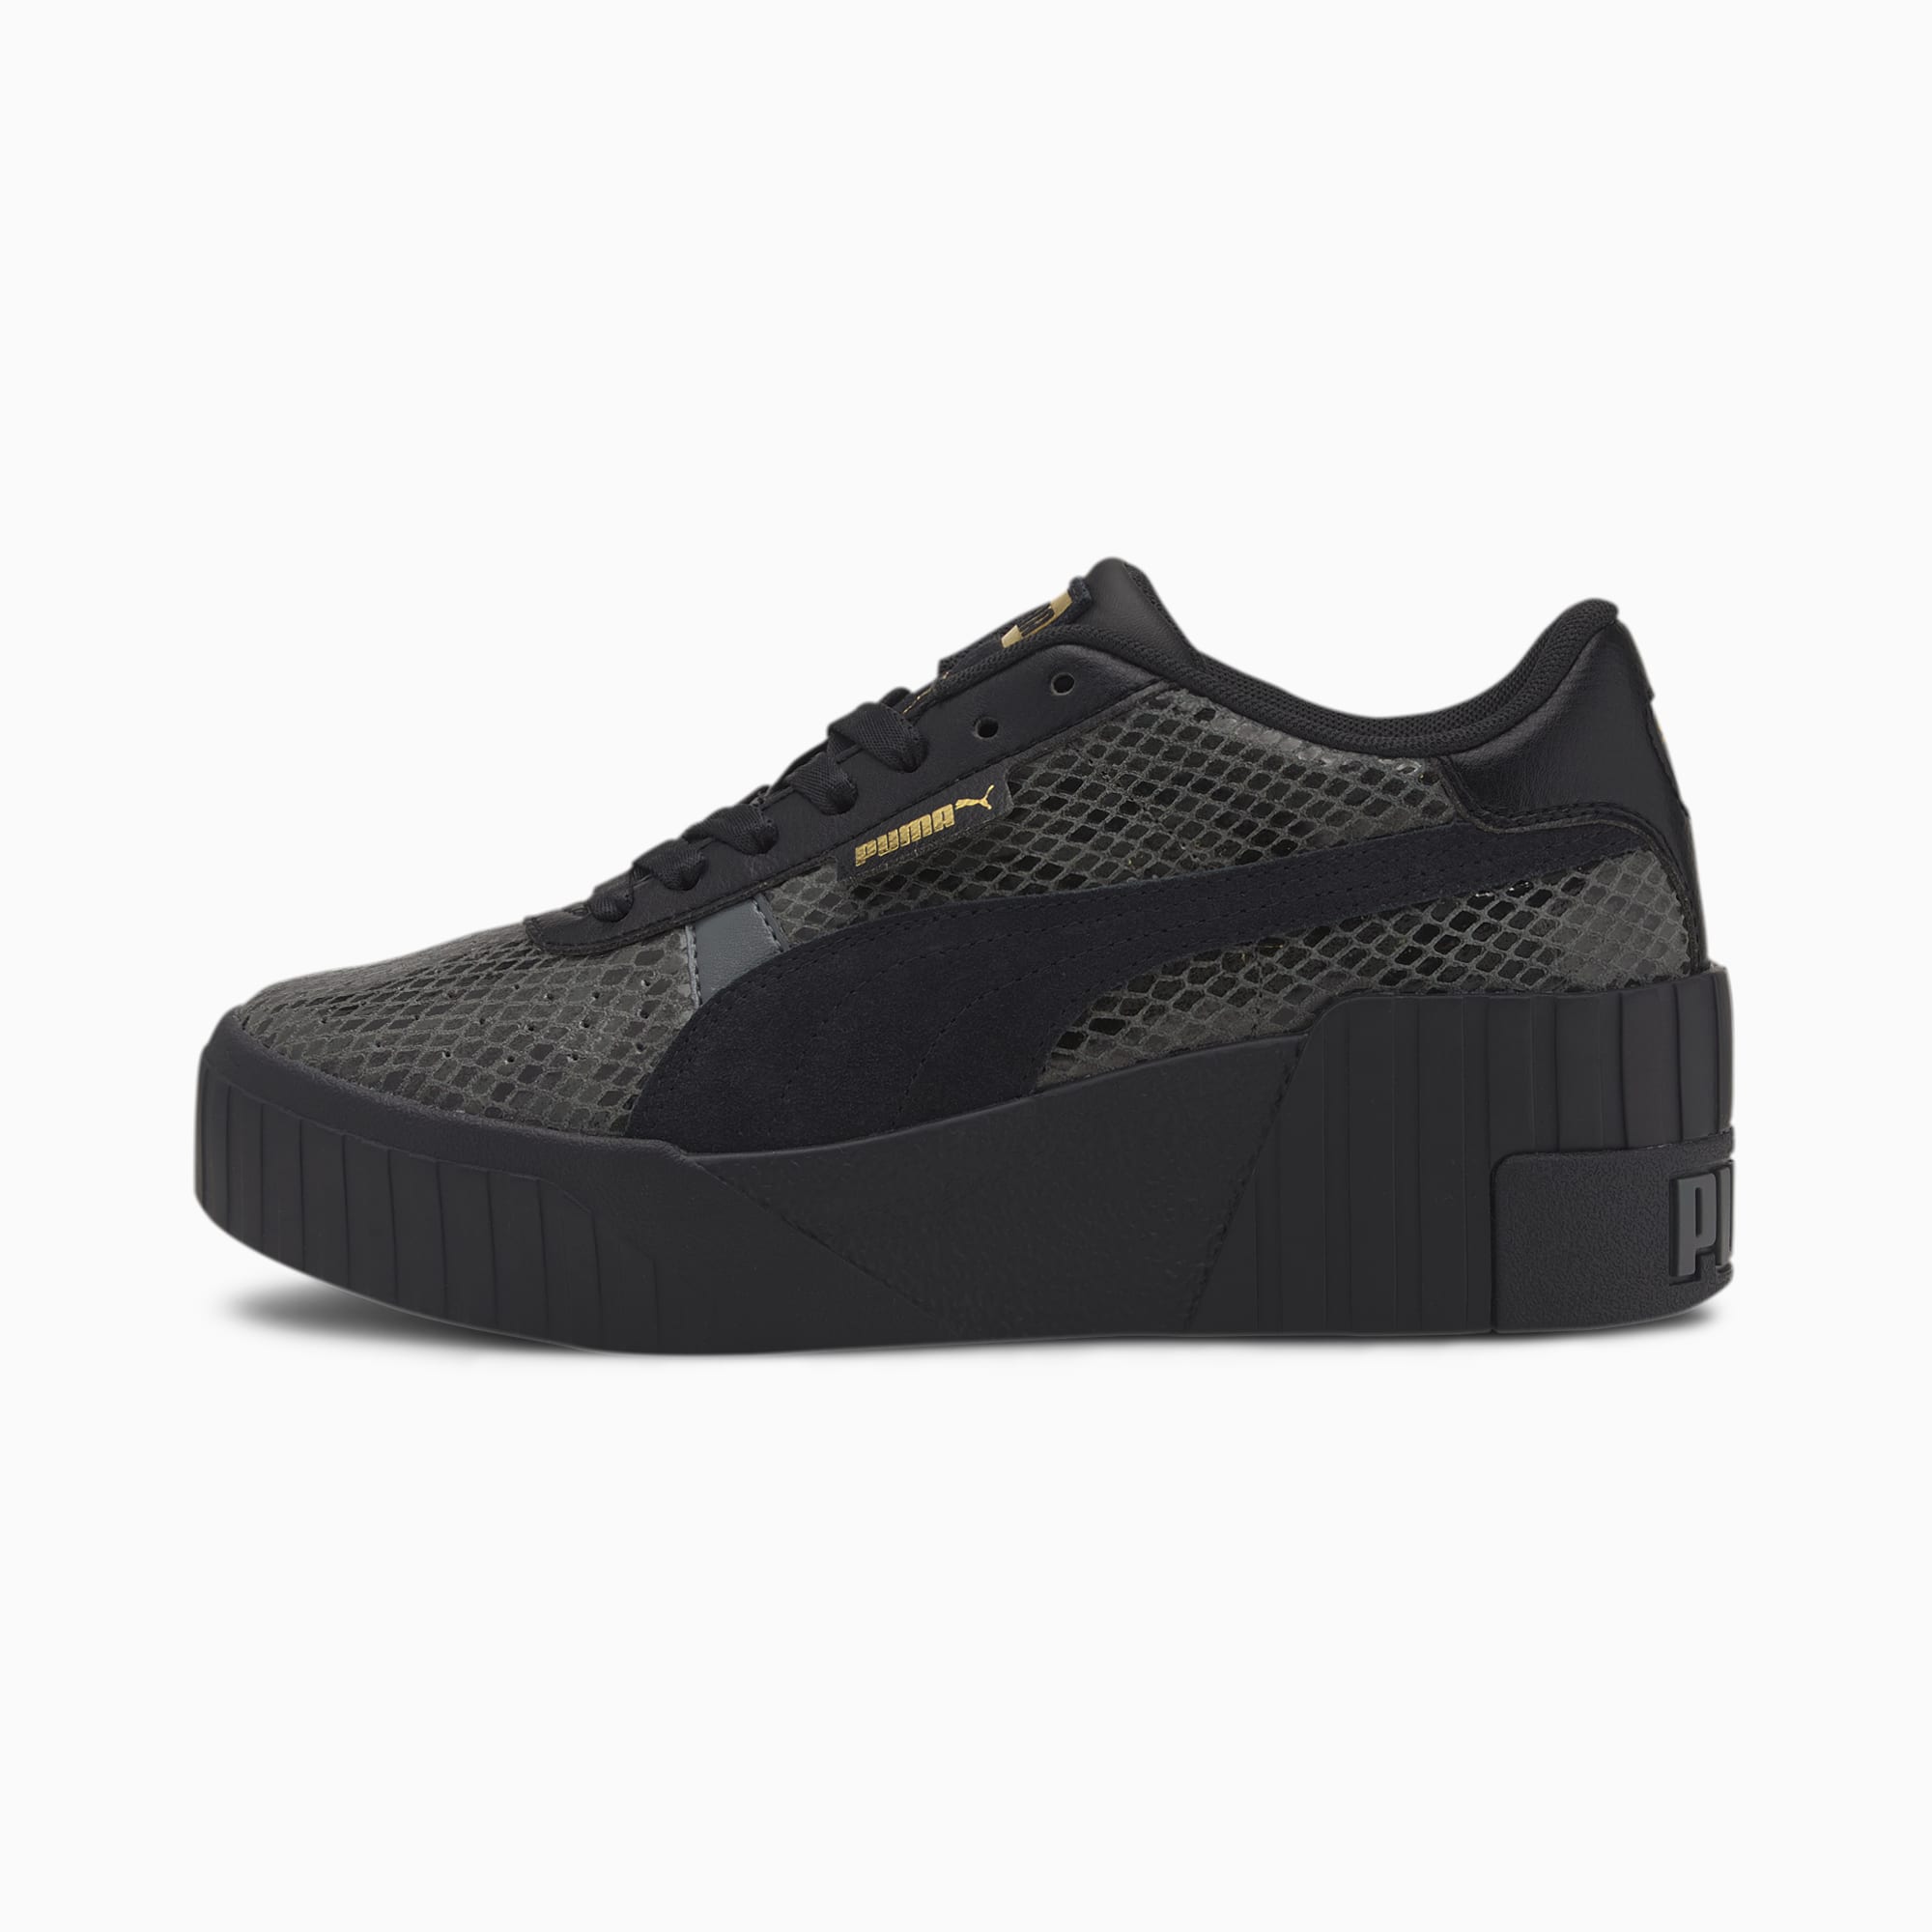 puma wedges sneakers black